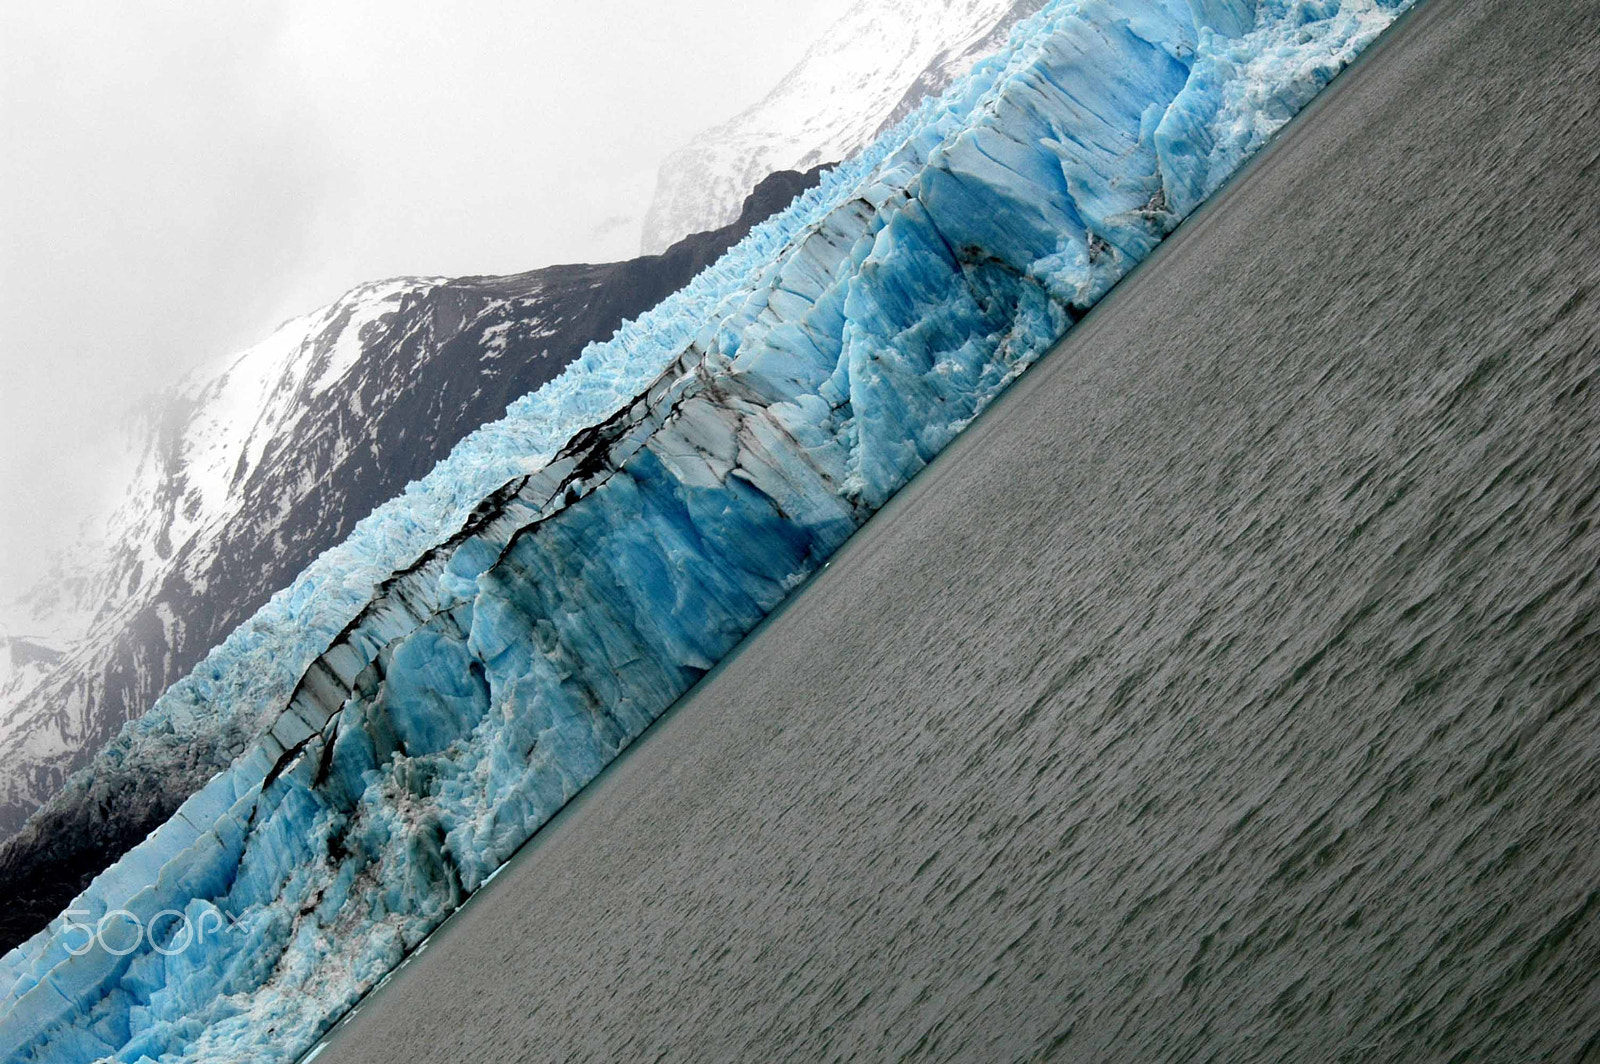 Nikon D70s + AF Zoom-Nikkor 35-80mm f/4-5.6D sample photo. Upsala glacier, santa cruz, argentina photography